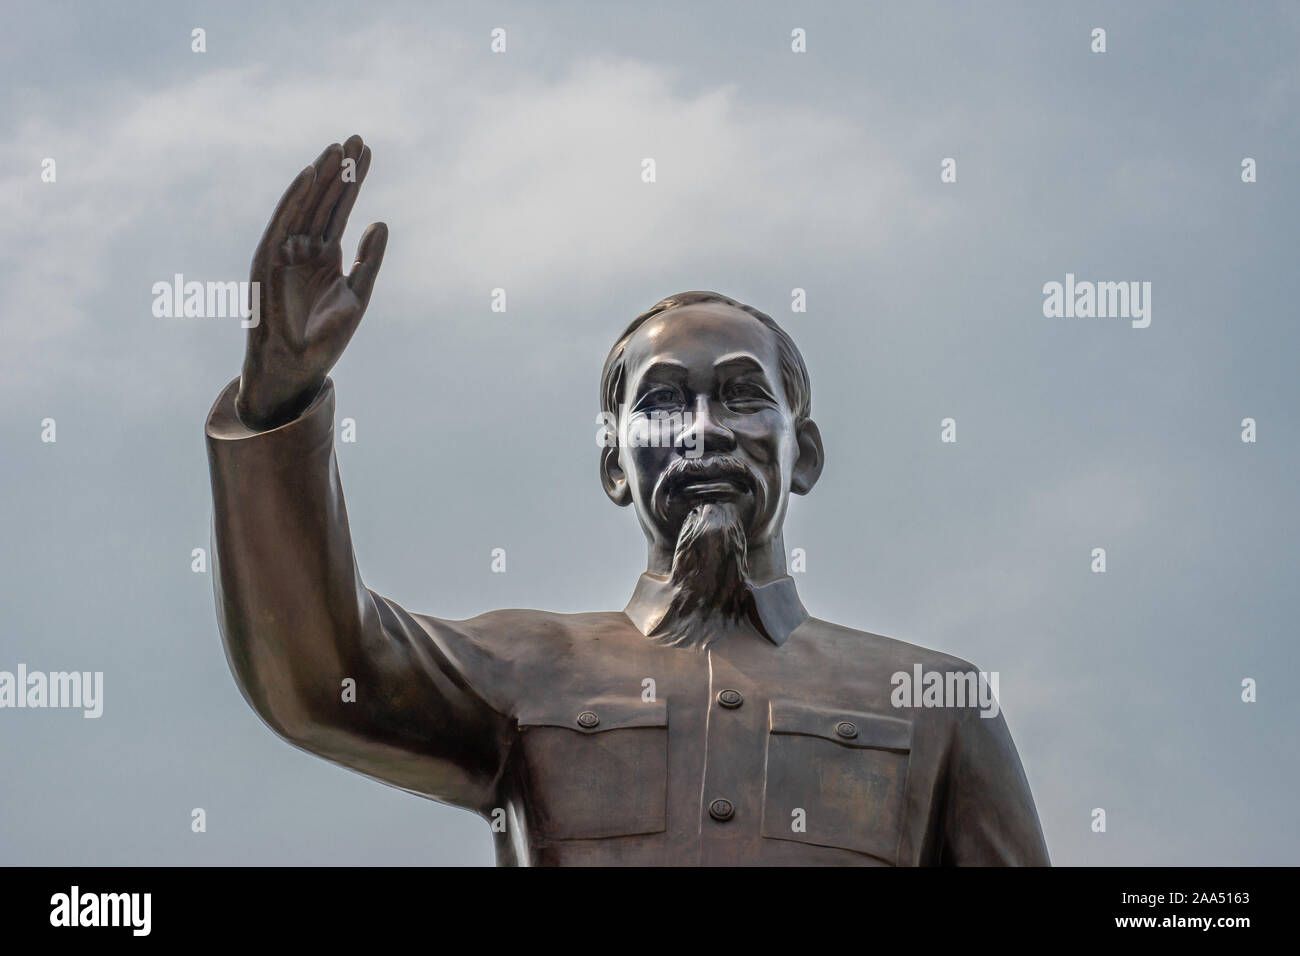 La città di Ho Chi Minh, Vietnam - Marzo 12, 2019: Downtown. Bronzetto busto statua di Ho Chi Minh stesso sotto il blu cloudscape. Foto Stock